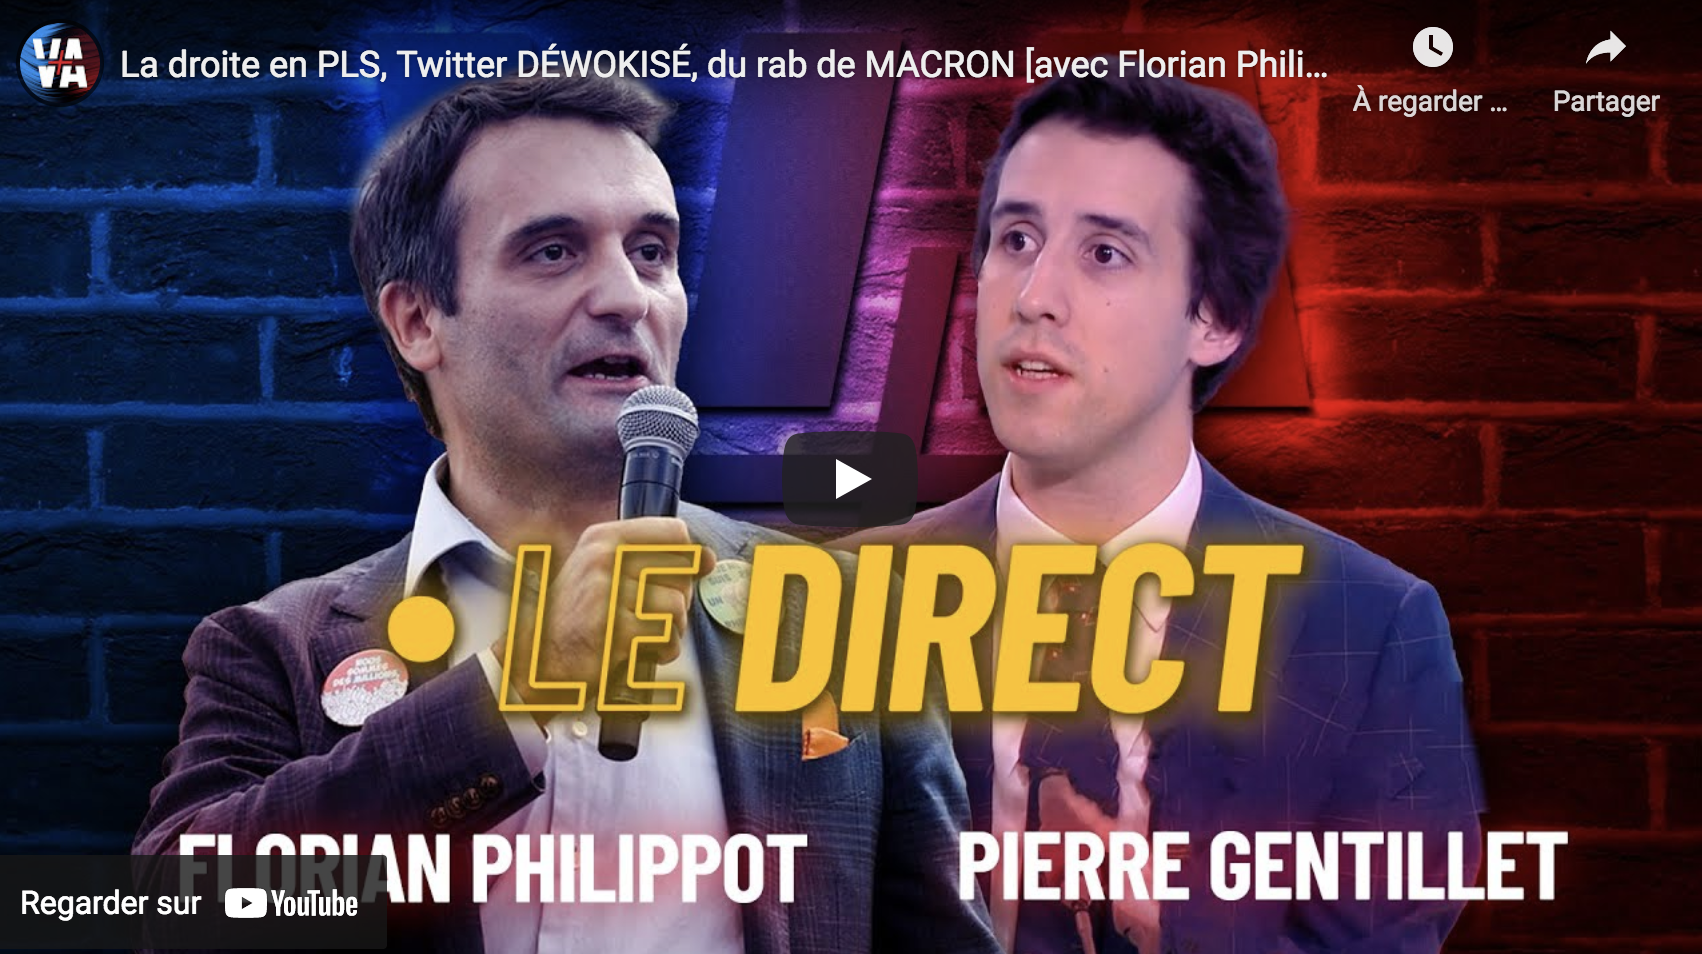 La droite en PLS, Twitter déwokisé, du rab pour Macron [avec Florian Philippot et Pierre Gentillet]